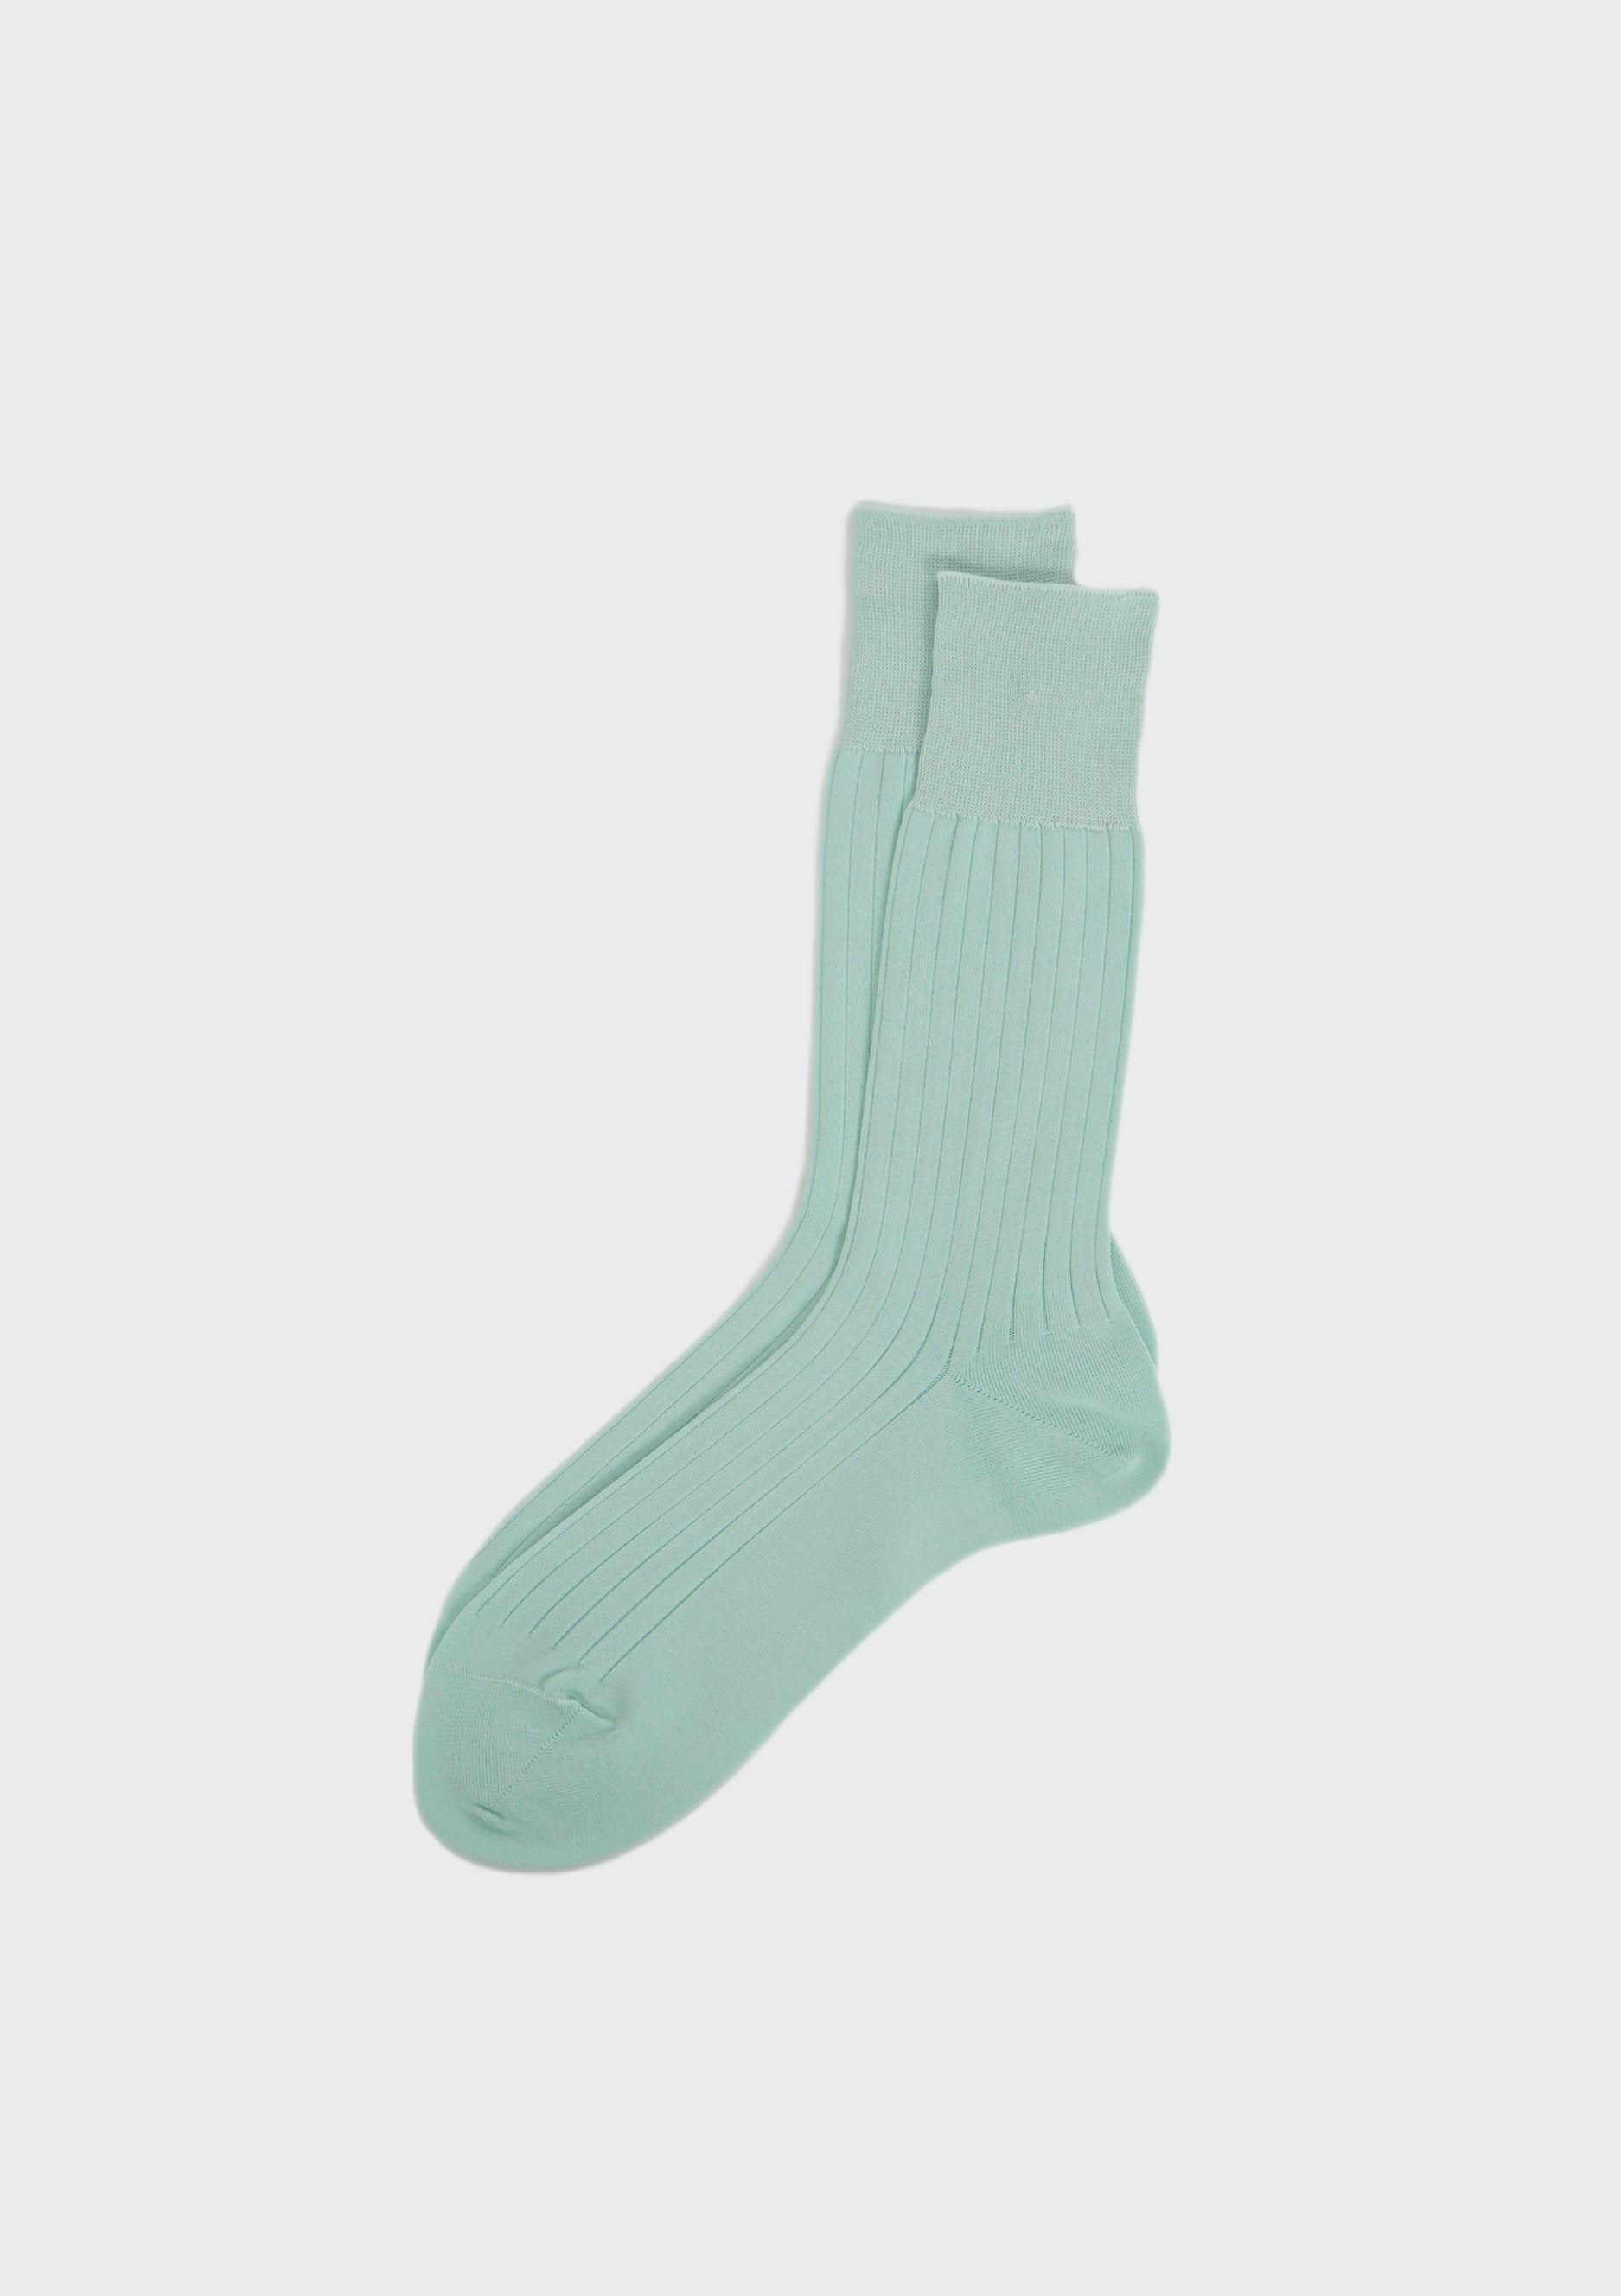 mint green dress socks